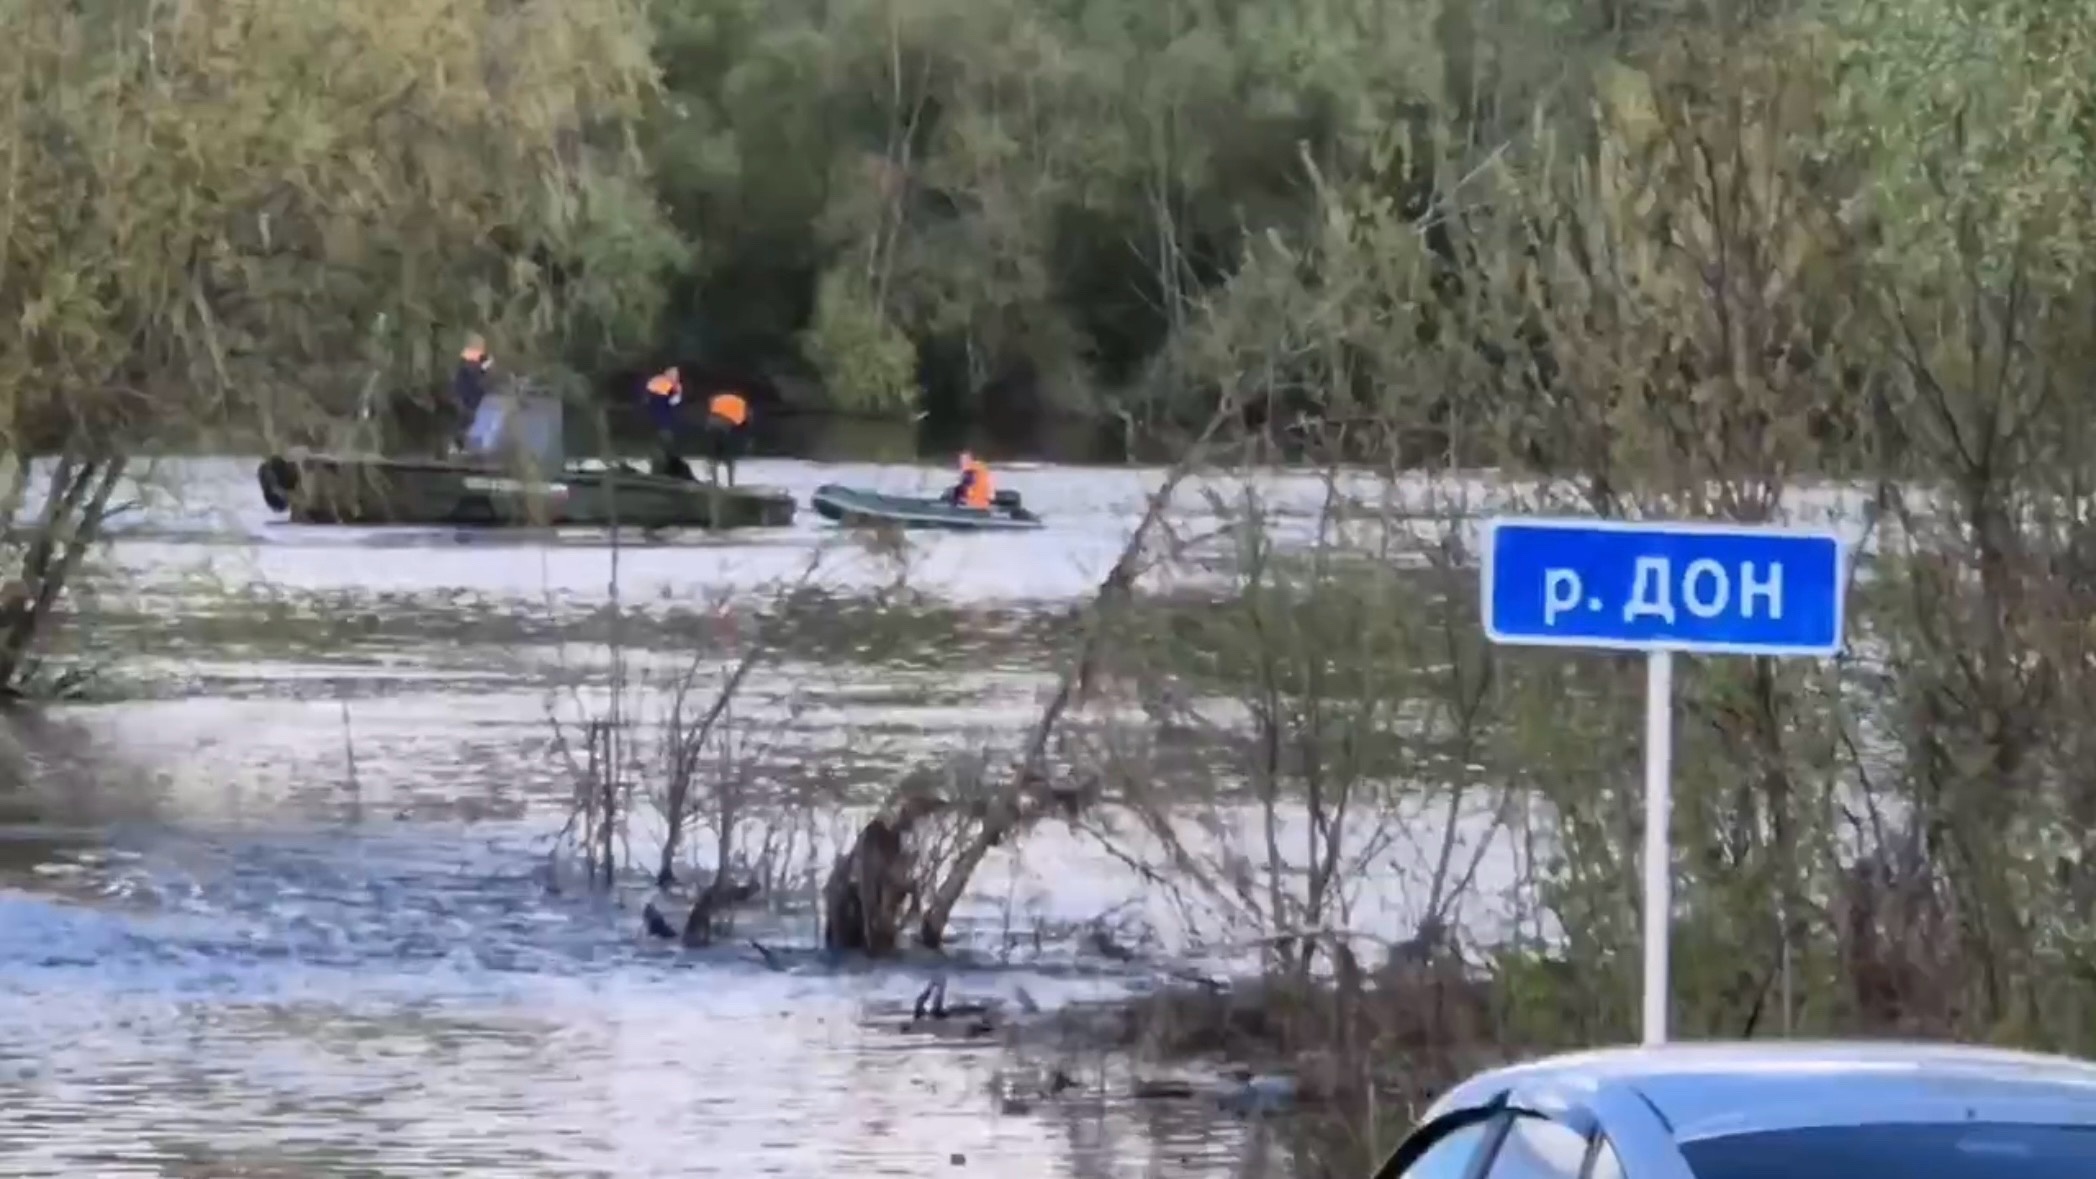 Участники СВО из Чувашии пропали по пути домой: их автомобиль утонул в Воронежской области 